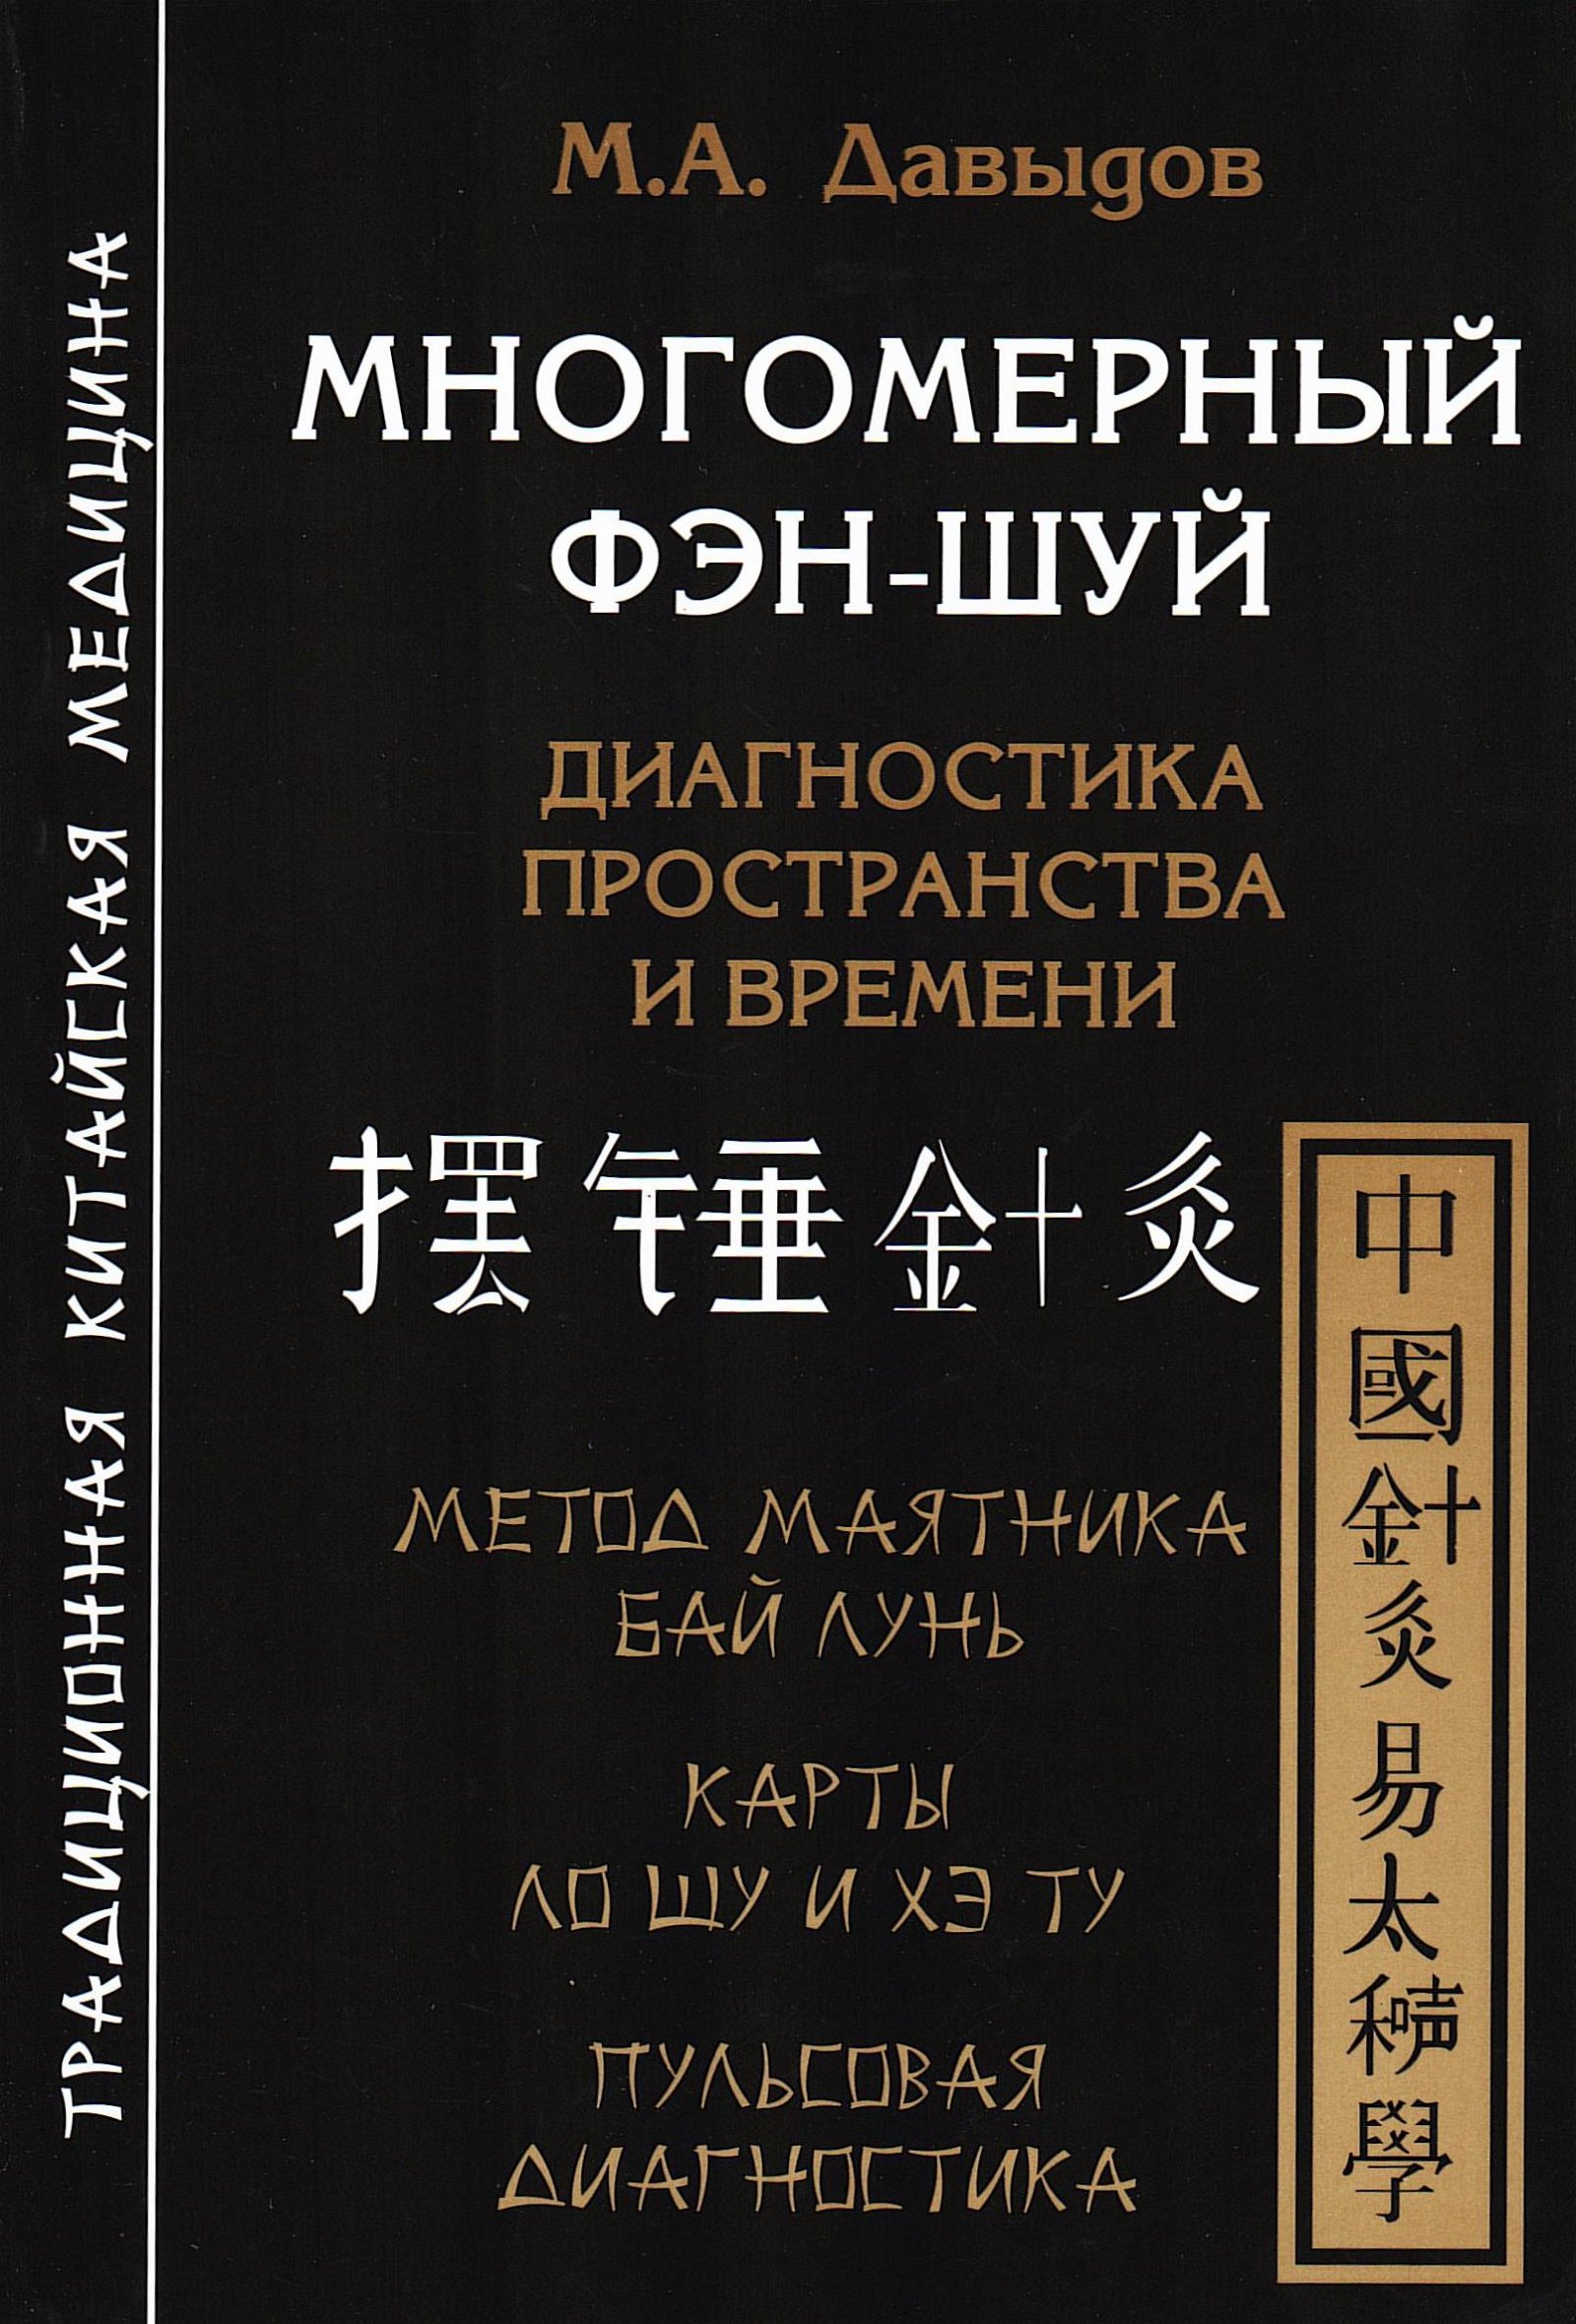 Купить книгу Многомерный Фэн-шуй Давыдов М. А. в интернет-магазине Ариаварта